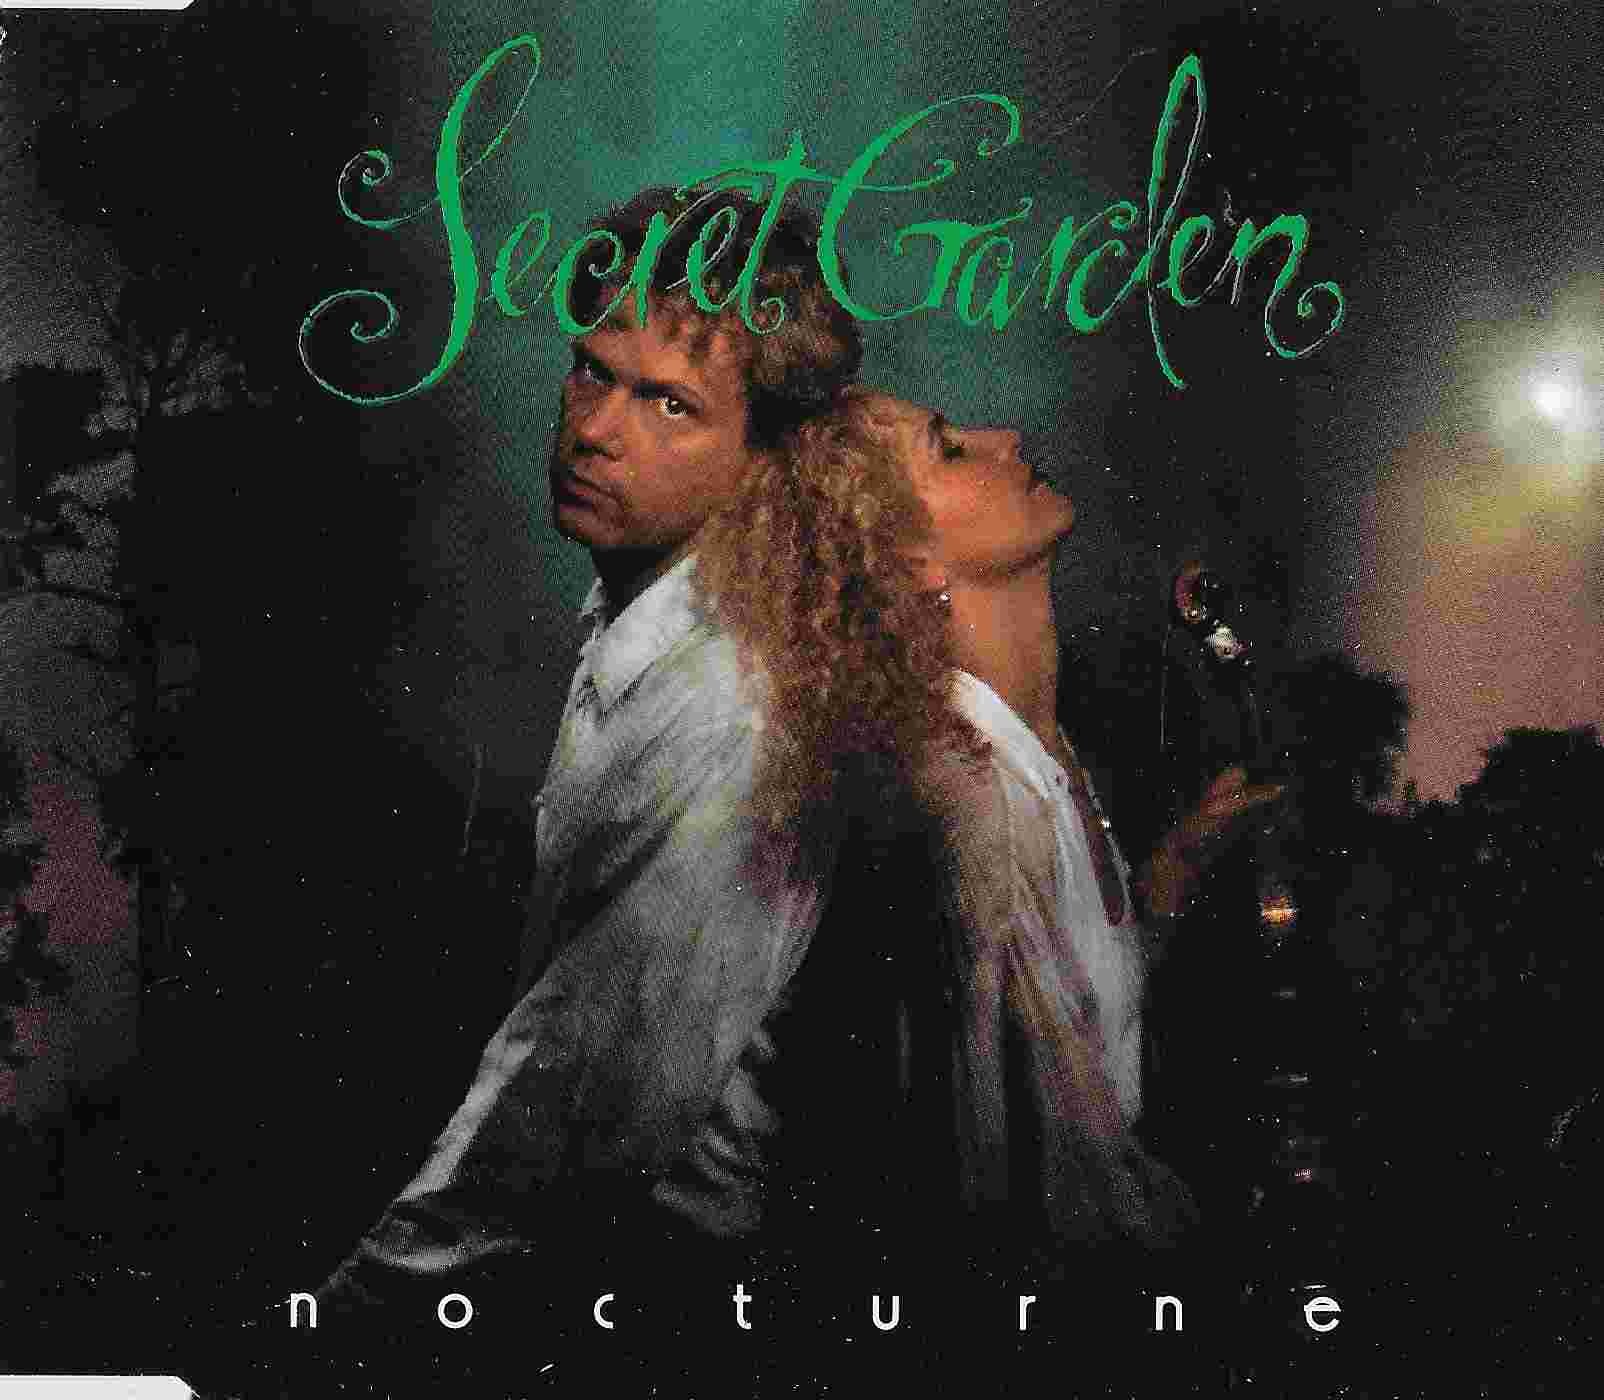 Picture of 856978 2 Nocturne - Promotional CD by artist Boyland / Skavlan / Secret Garden 